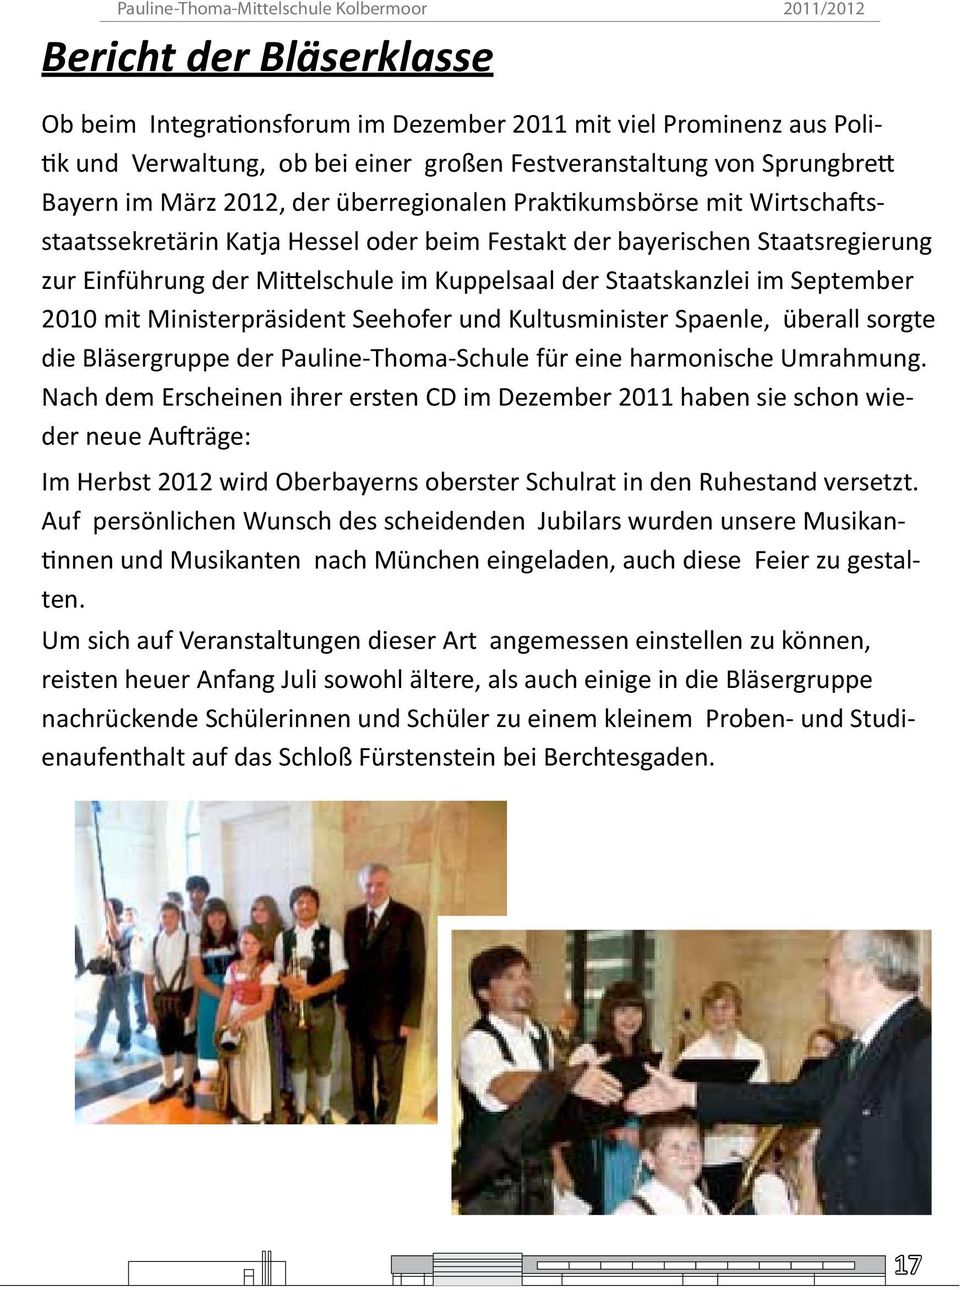 September 2010 mit Ministerpräsident Seehofer und Kultusminister Spaenle, überall sorgte die Bläsergruppe der Pauline-Thoma-Schule für eine harmonische Umrahmung.